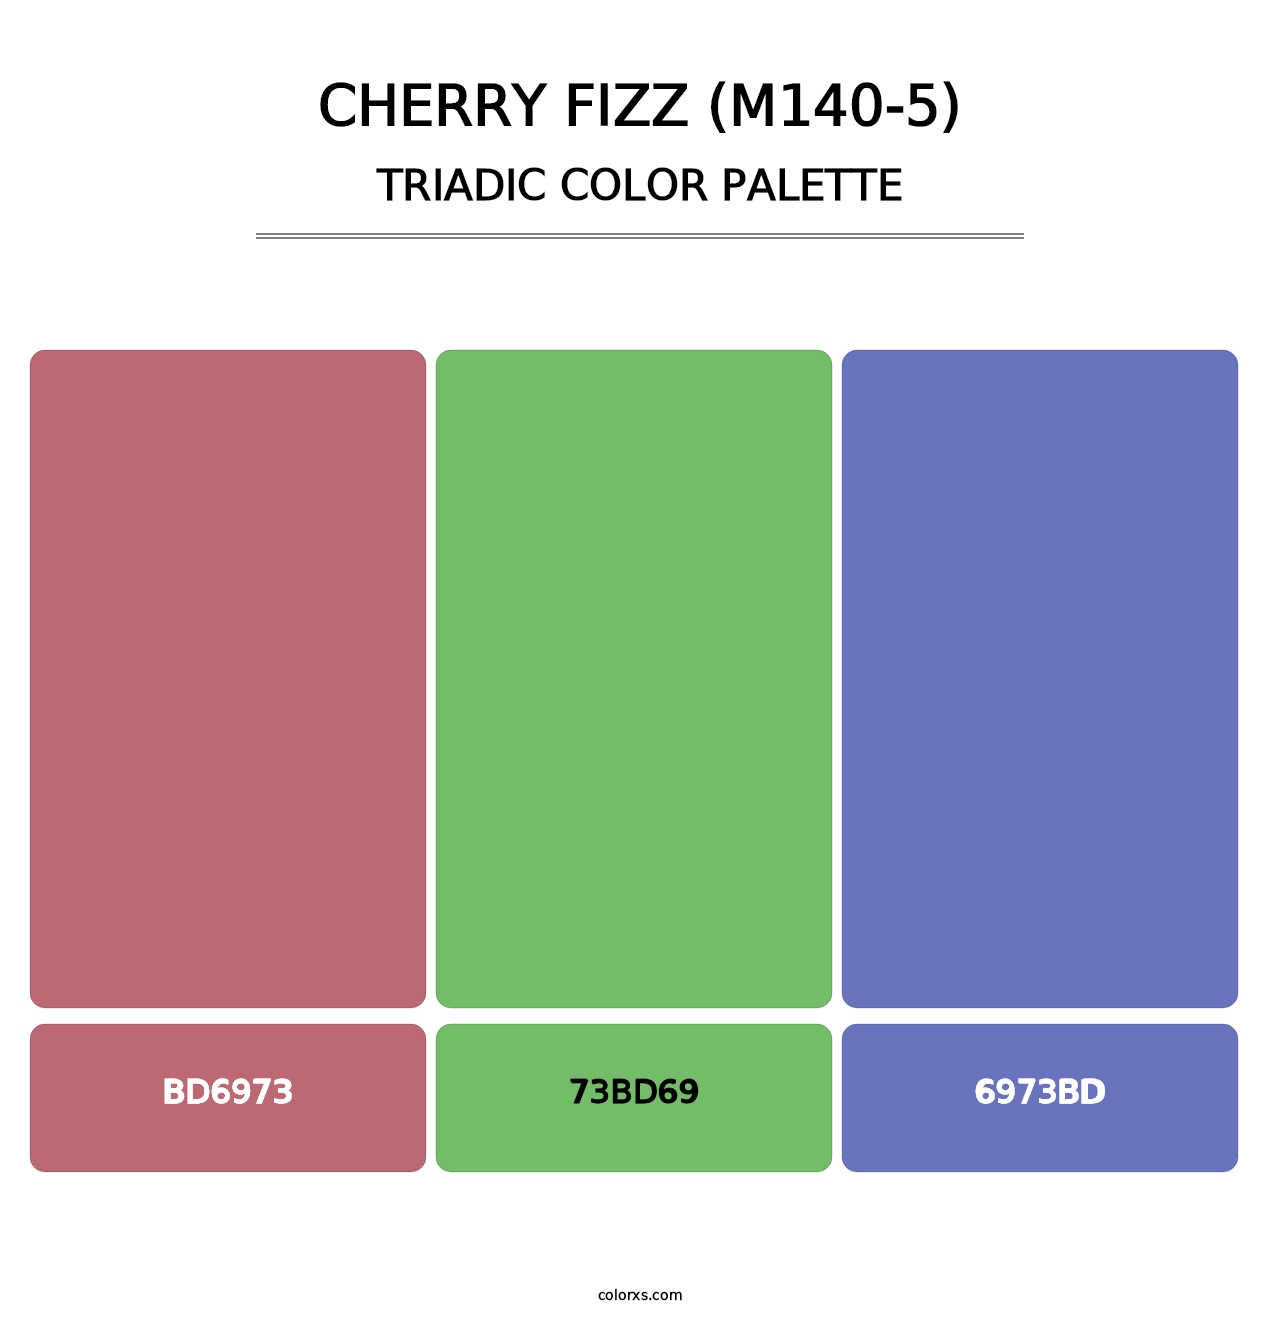 Cherry Fizz (M140-5) - Triadic Color Palette